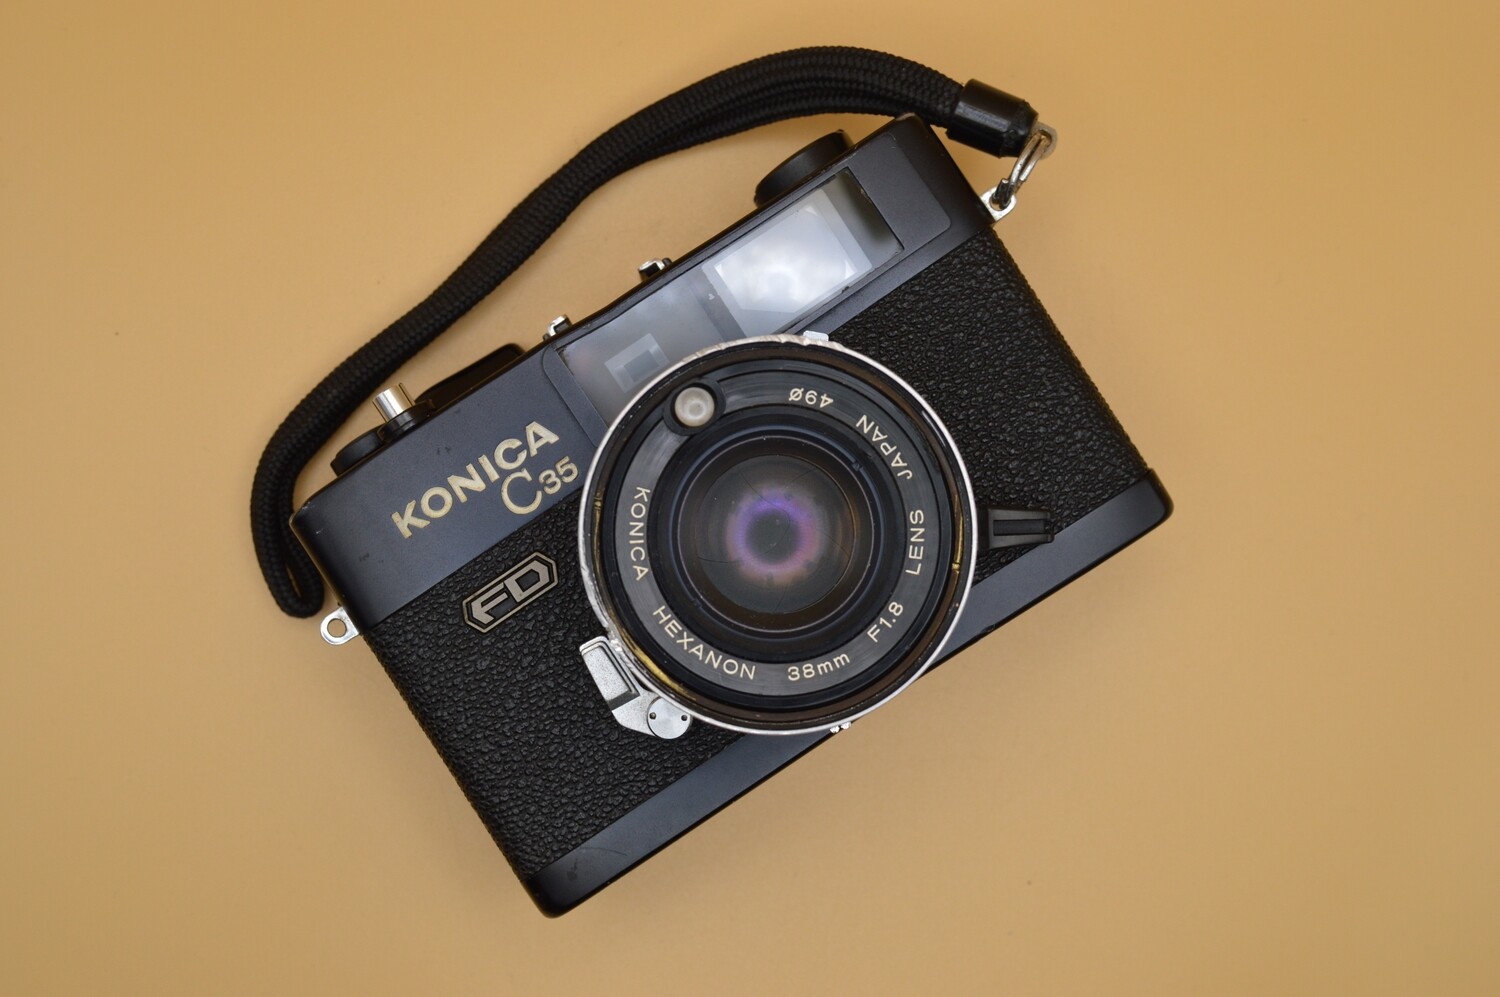 Konica C35 FD 35mm Rangefinder Camera - As Is